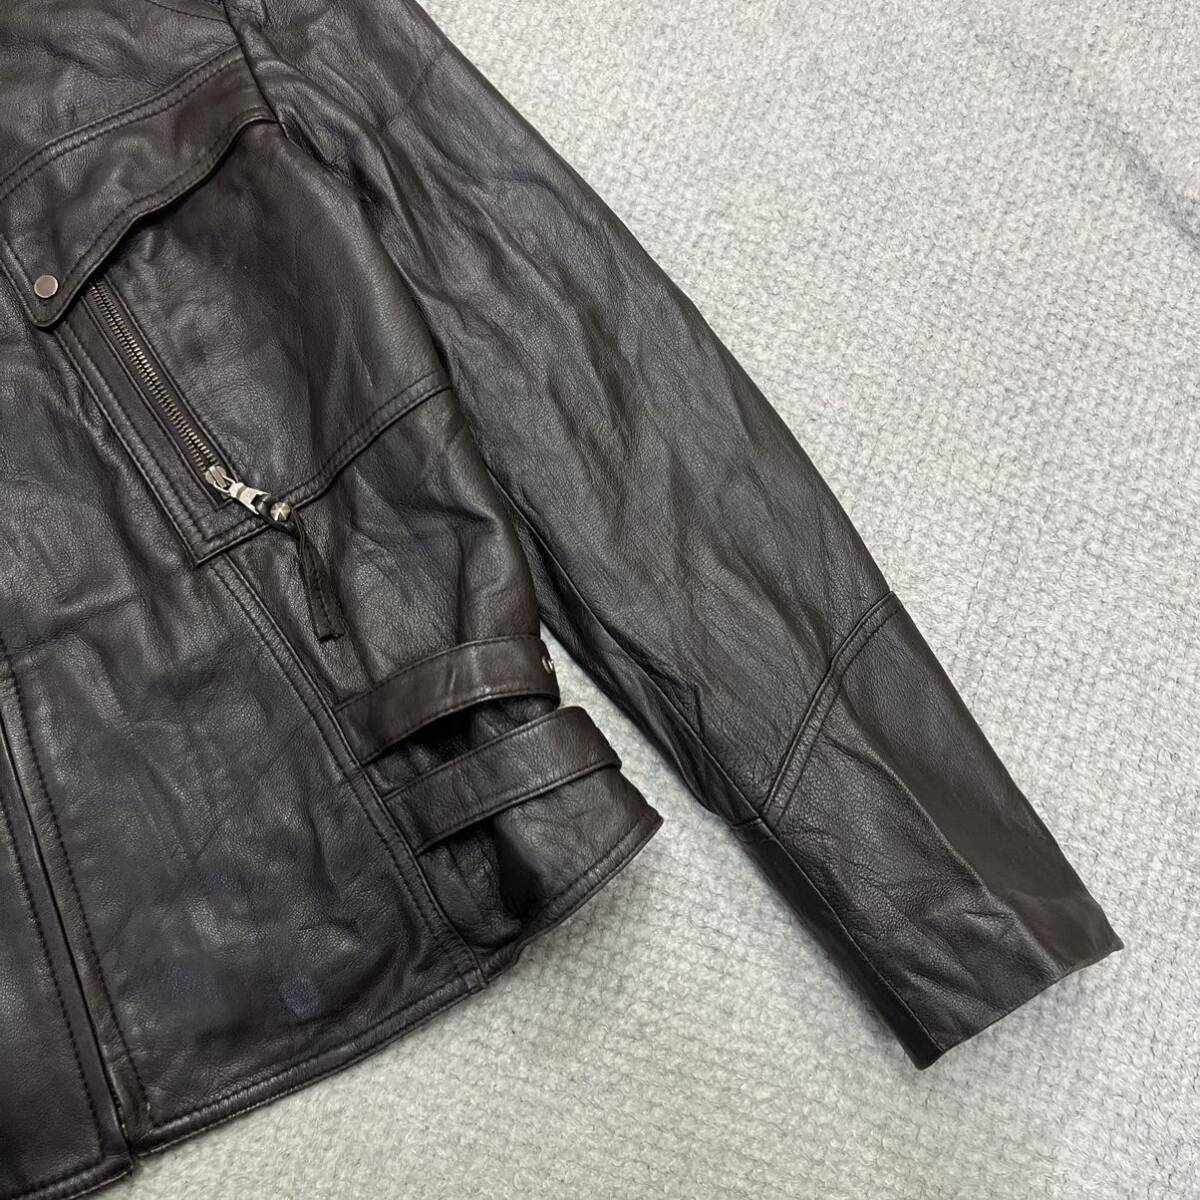 1 иен старт! (11) альпака кожа одиночный байкерская куртка размер M соответствует натуральная кожа темно-коричневый Zip женский tops нет максимальной ставки 